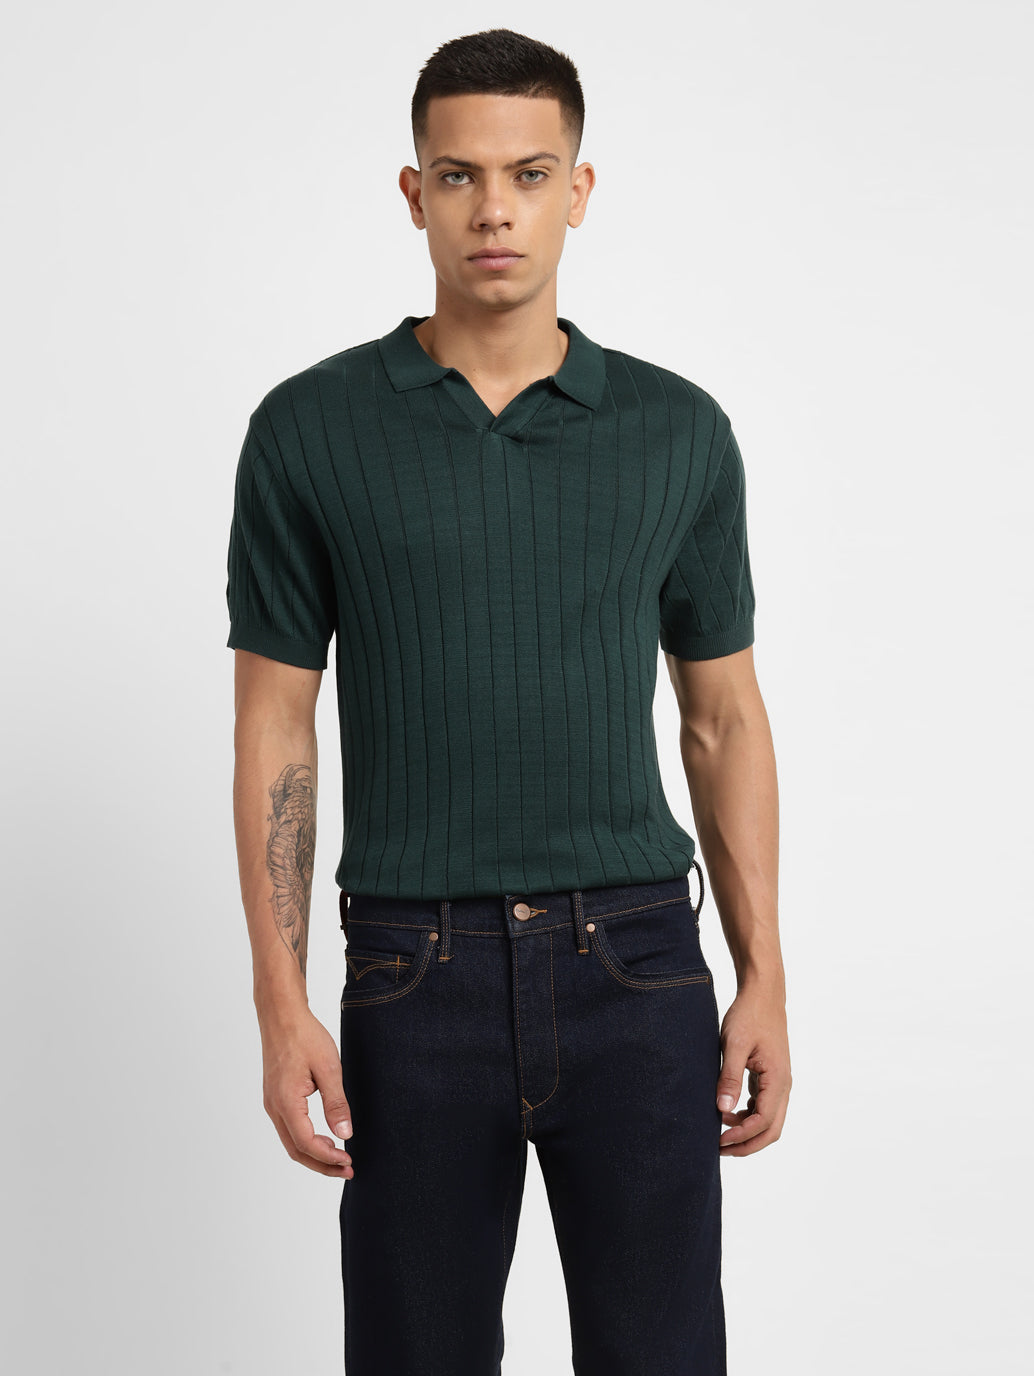 Men's Self Design Polo T-shirt